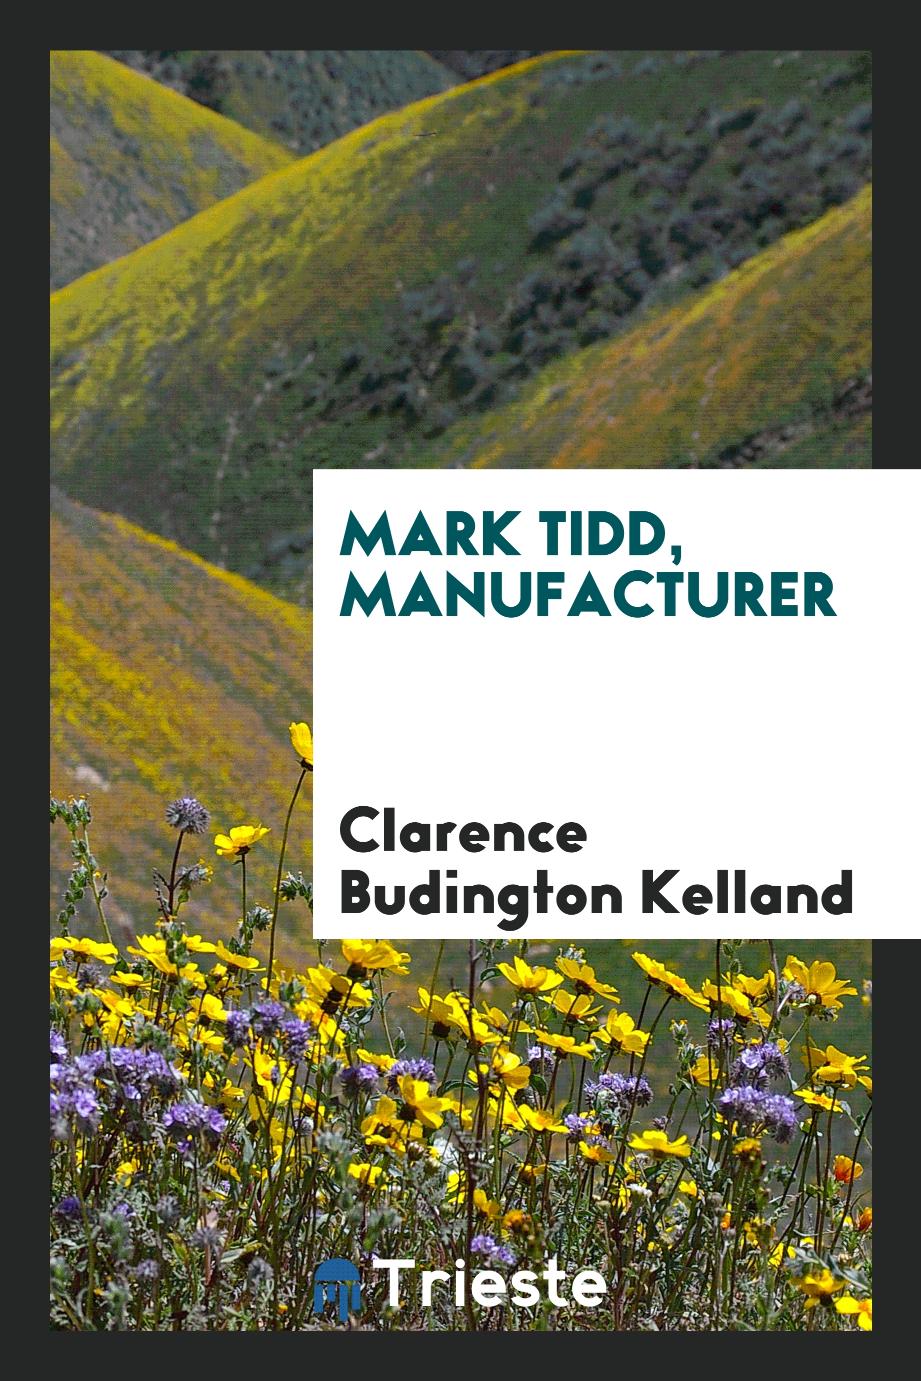 Mark Tidd, manufacturer